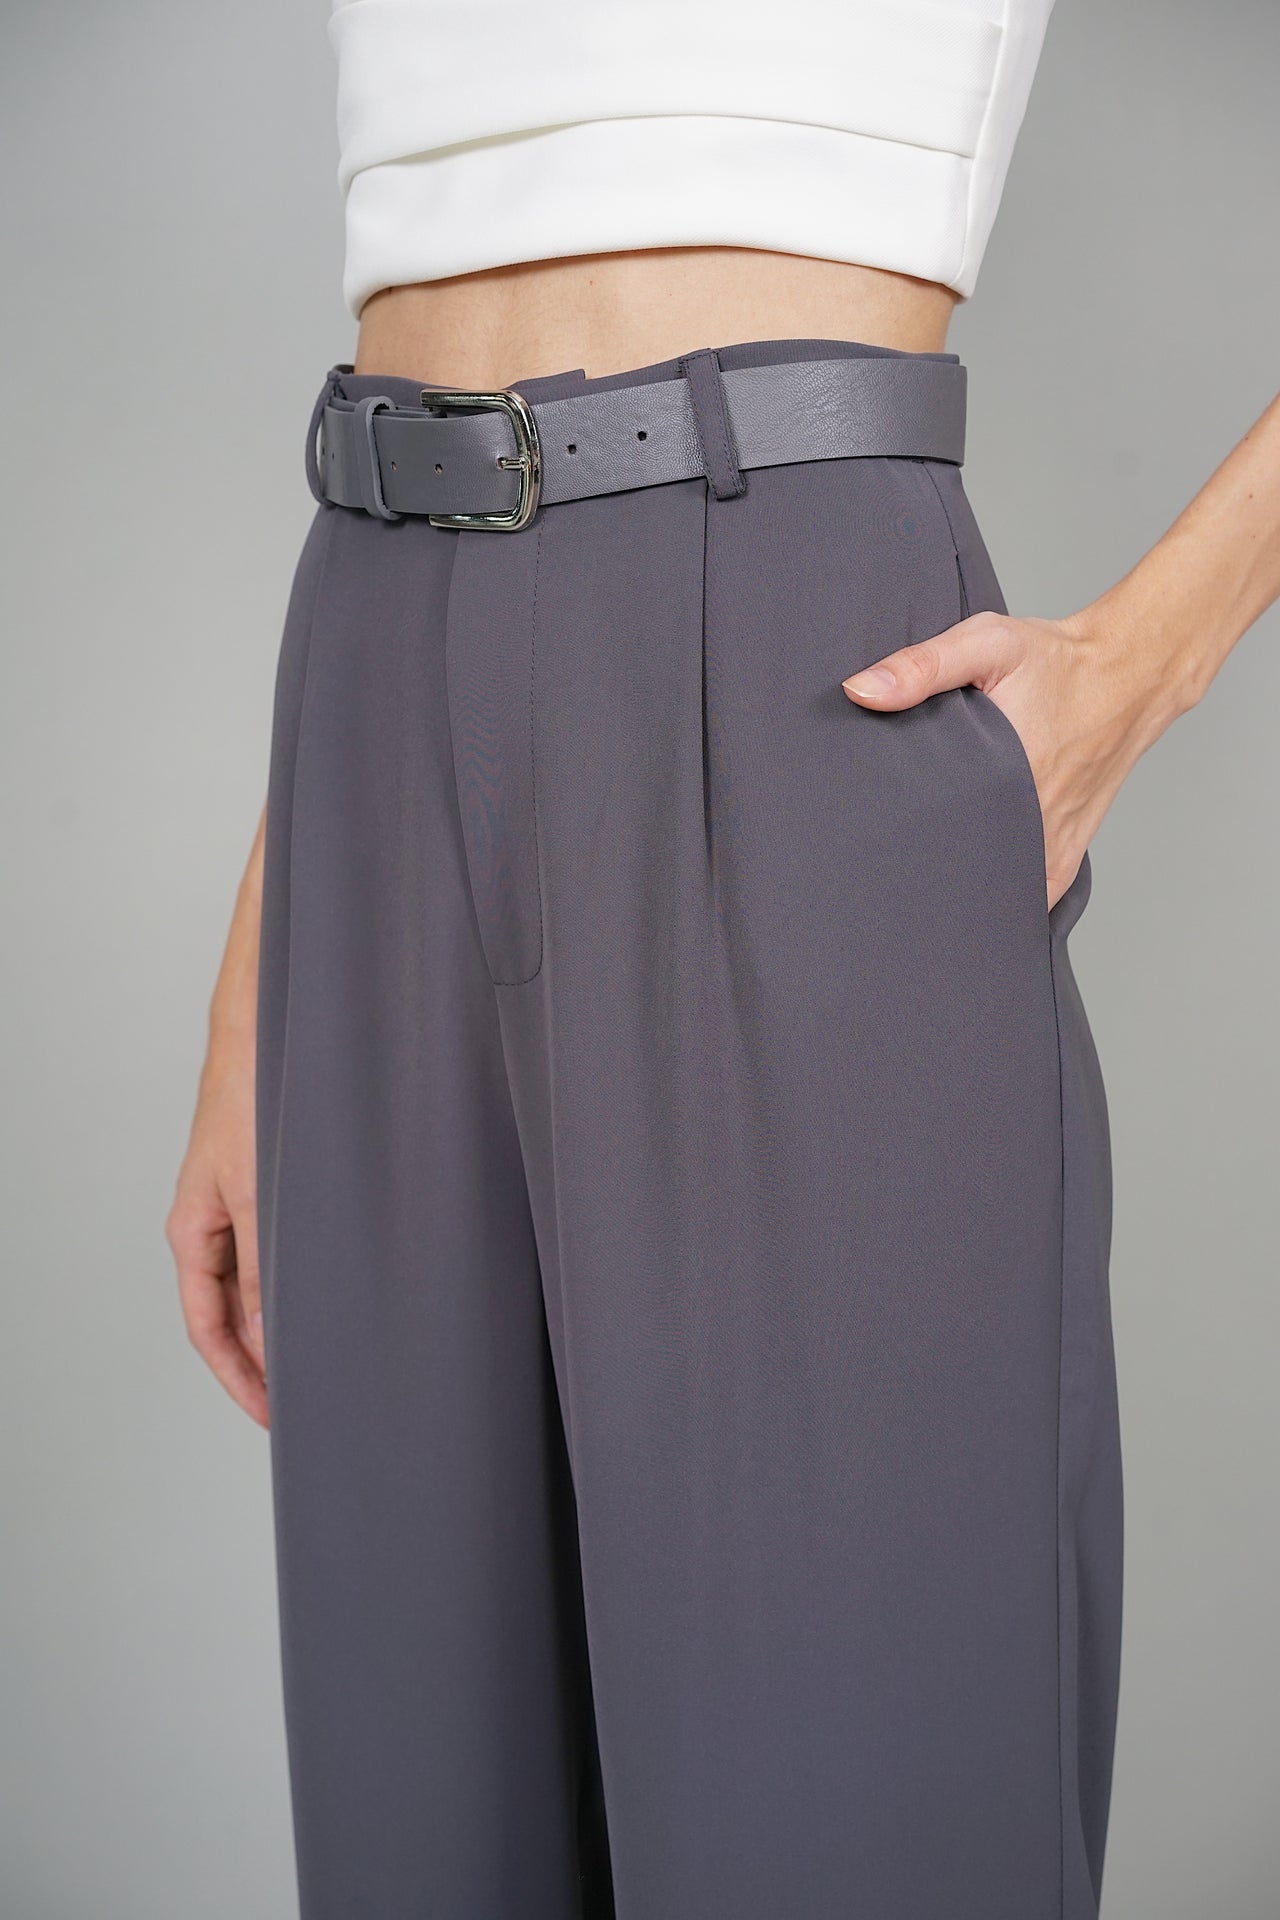 Junie Belted Pants in Slate Grey